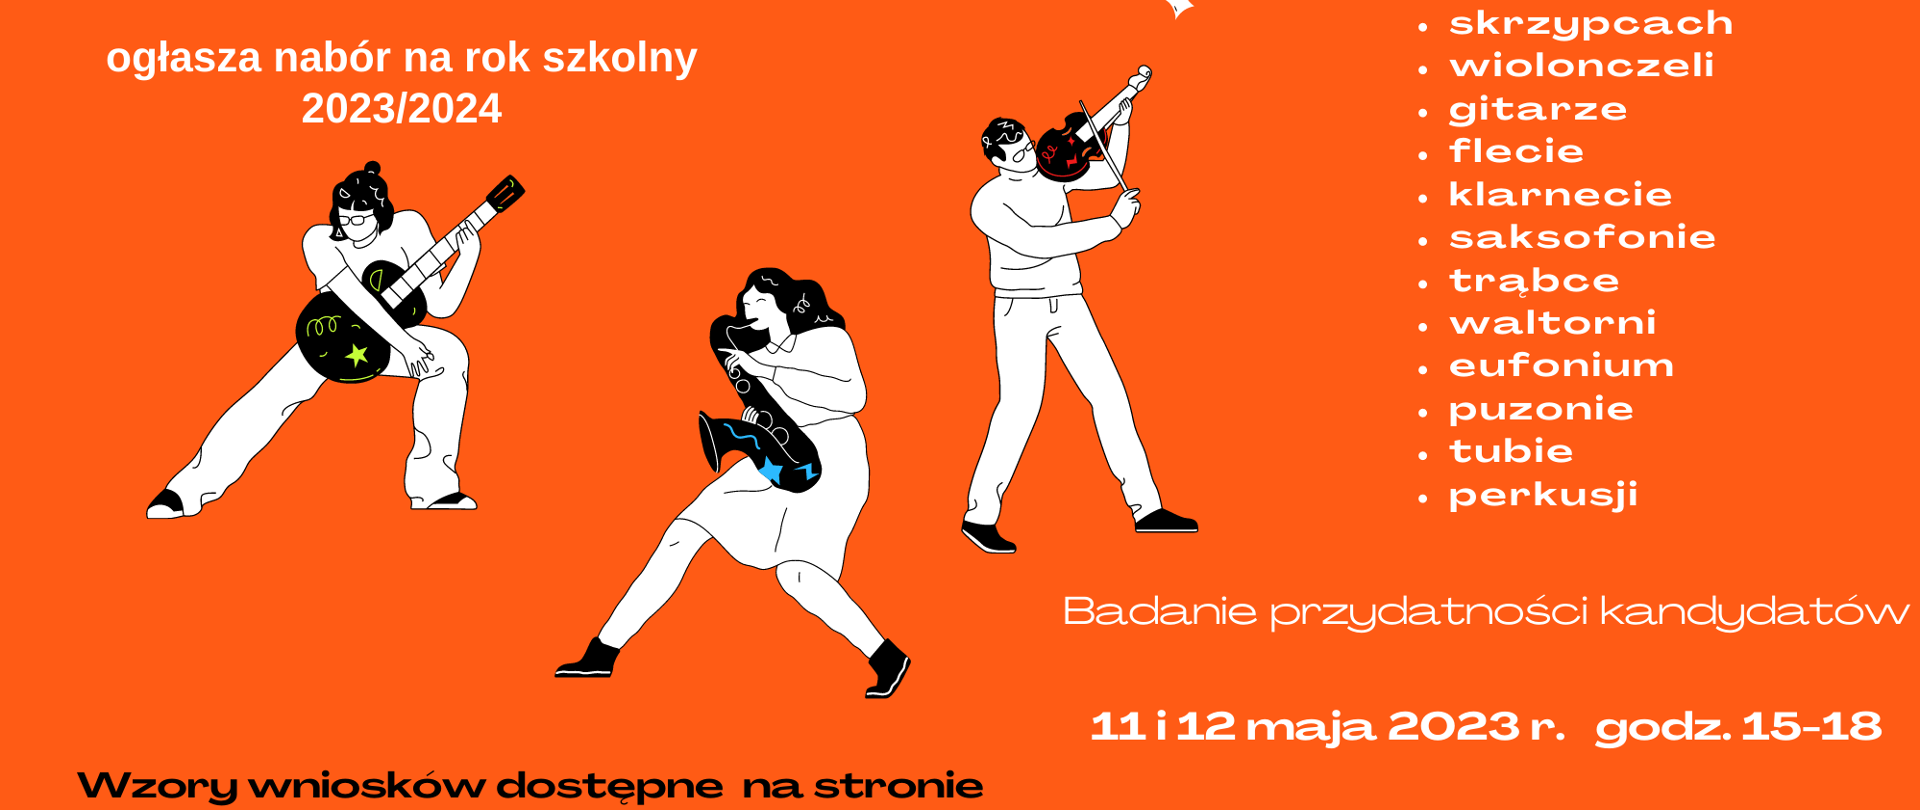 Plakat w kolorze pomarańczowym informujący o rekrutacji do PSM Koźle, na górze po lewej sylwetki osób grających na saksofonie, gitarze i skrzypcach, obok wypisane instrumenty, na których można się uczyć grać w szkole.